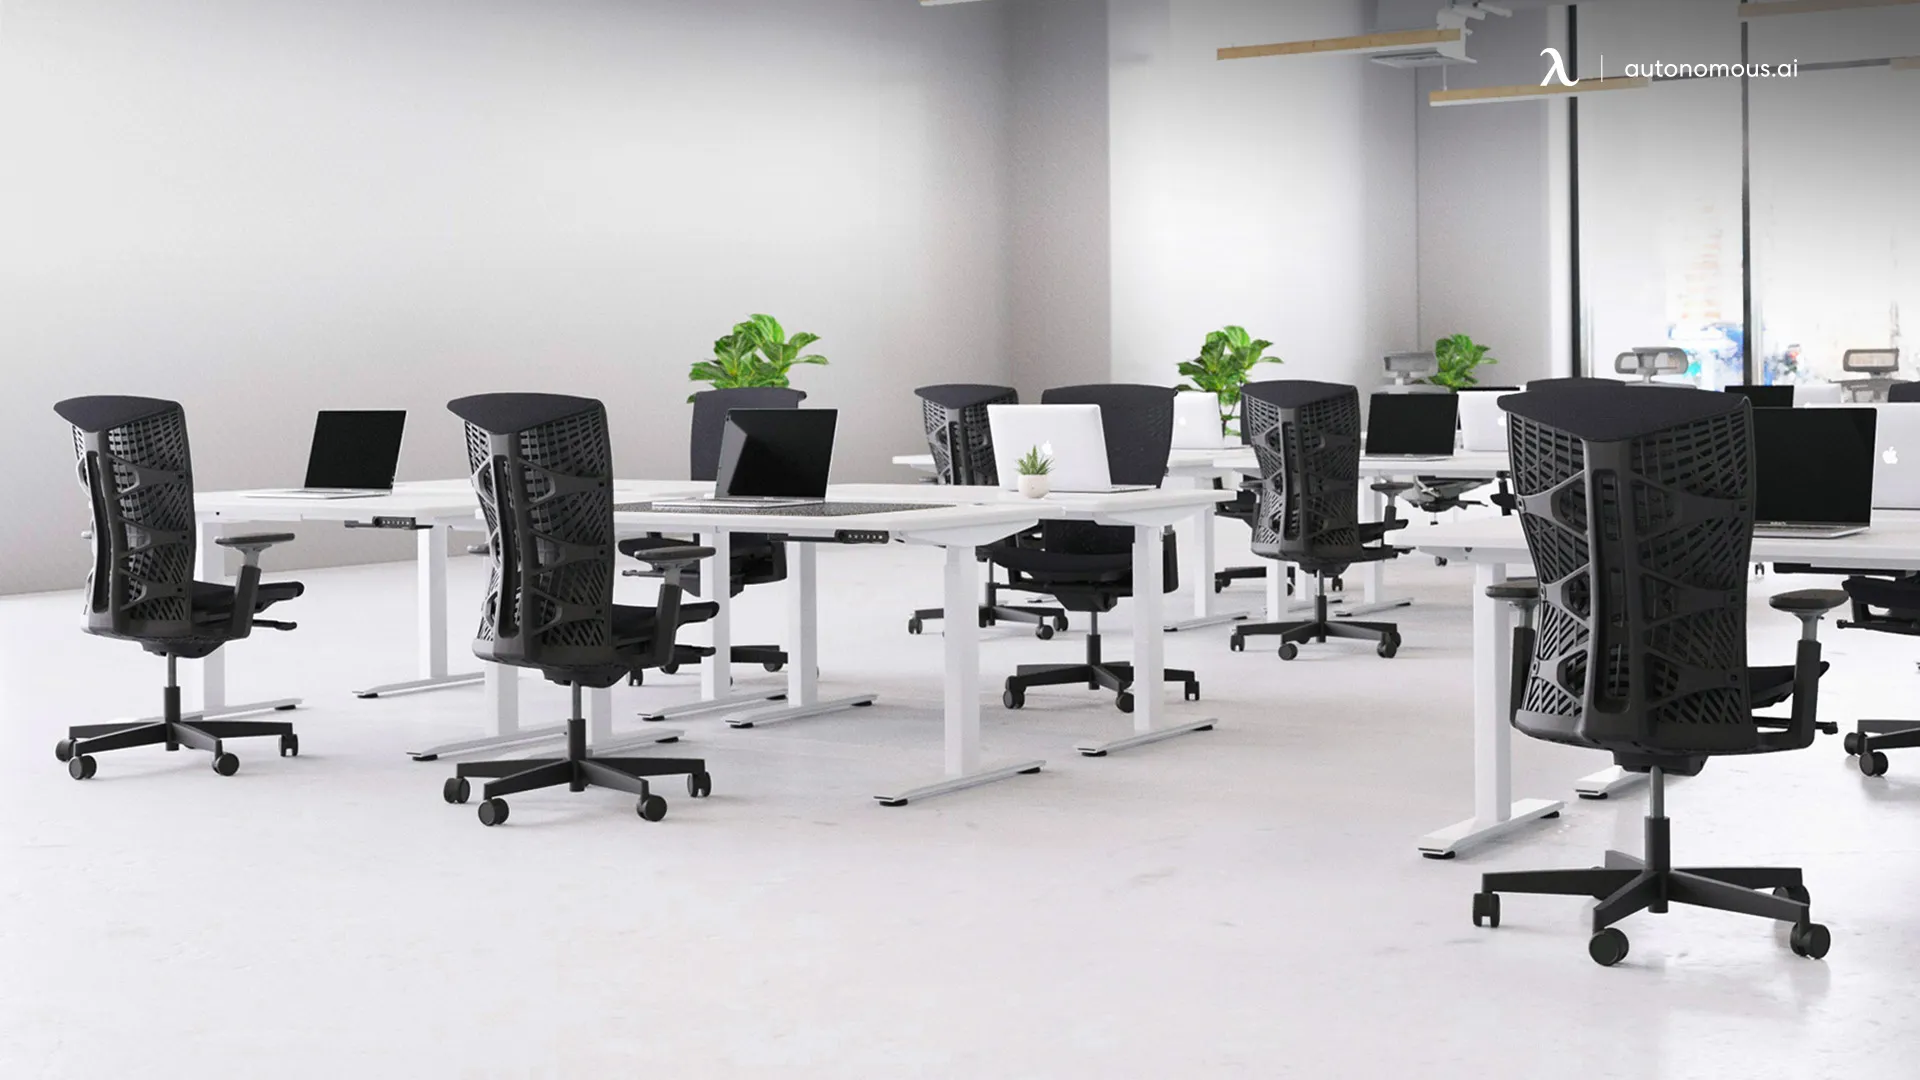 Autonomous - Office Furniture in Ontario